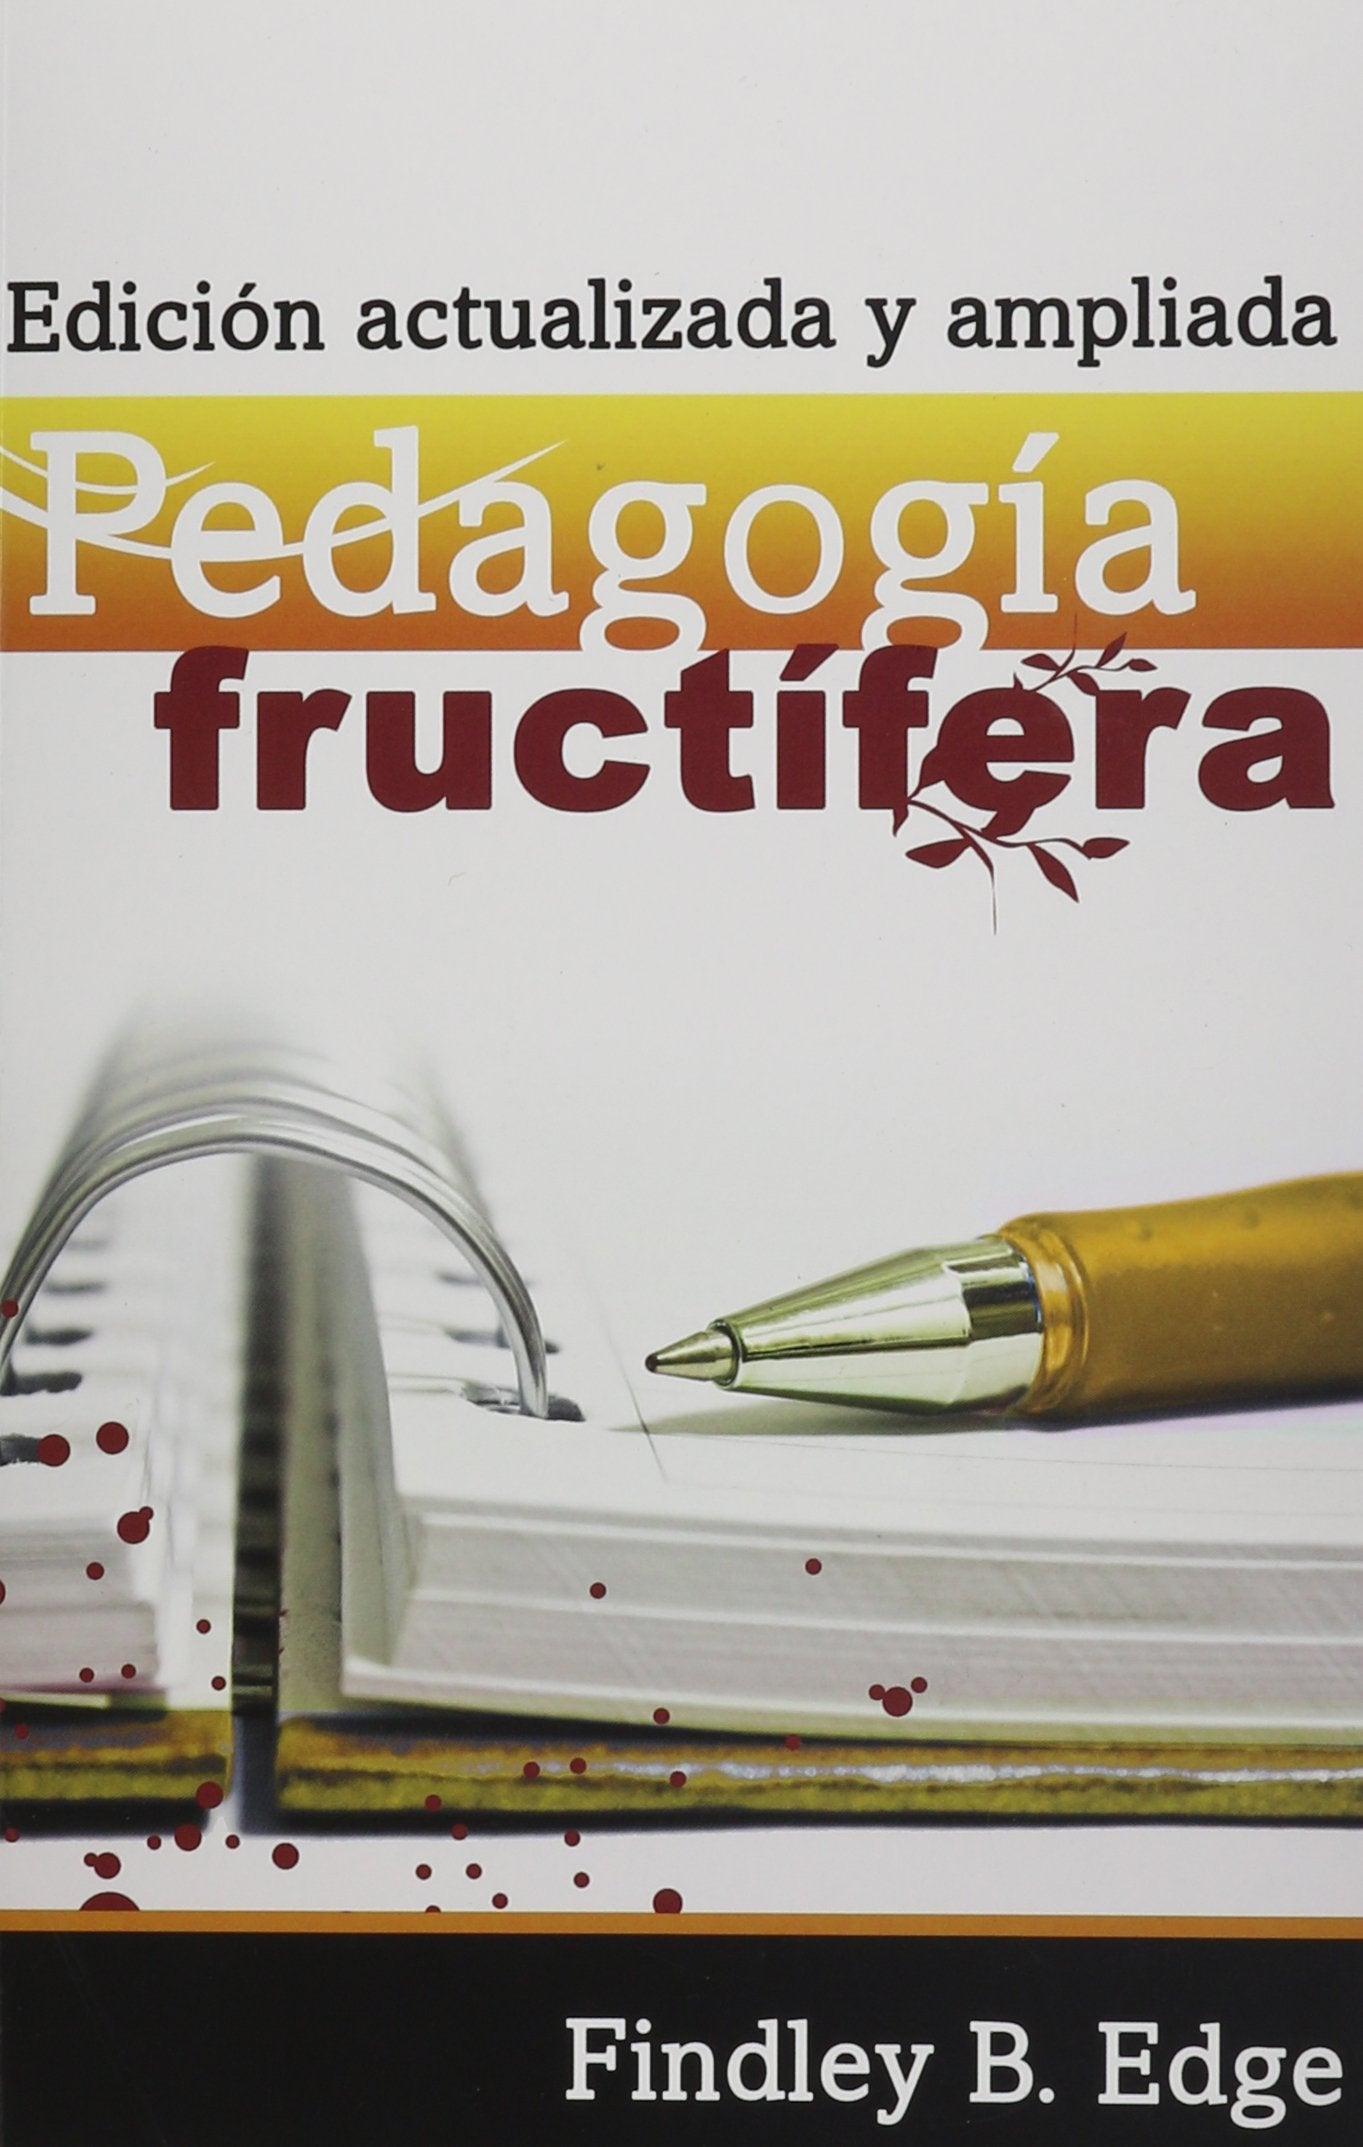 Pedagogia fructifera edicion actualizada y ampliada